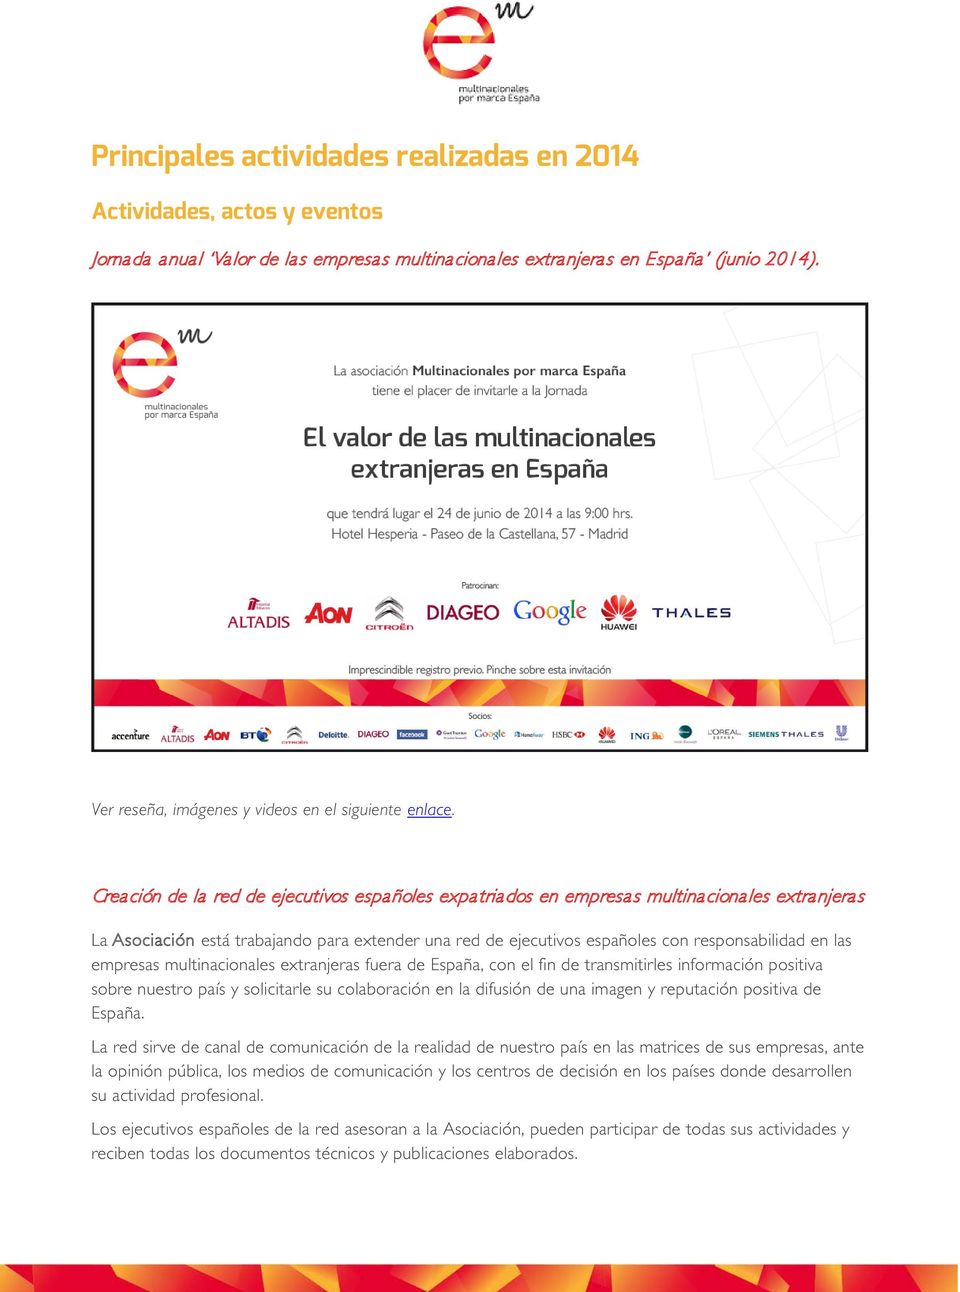 Crea ción de la red de ejecutivos españoles expatriados en empresas multinacionales extranjeras La Asociación está trabajando para extender una red de ejecutivos españoles con responsabilidad en las